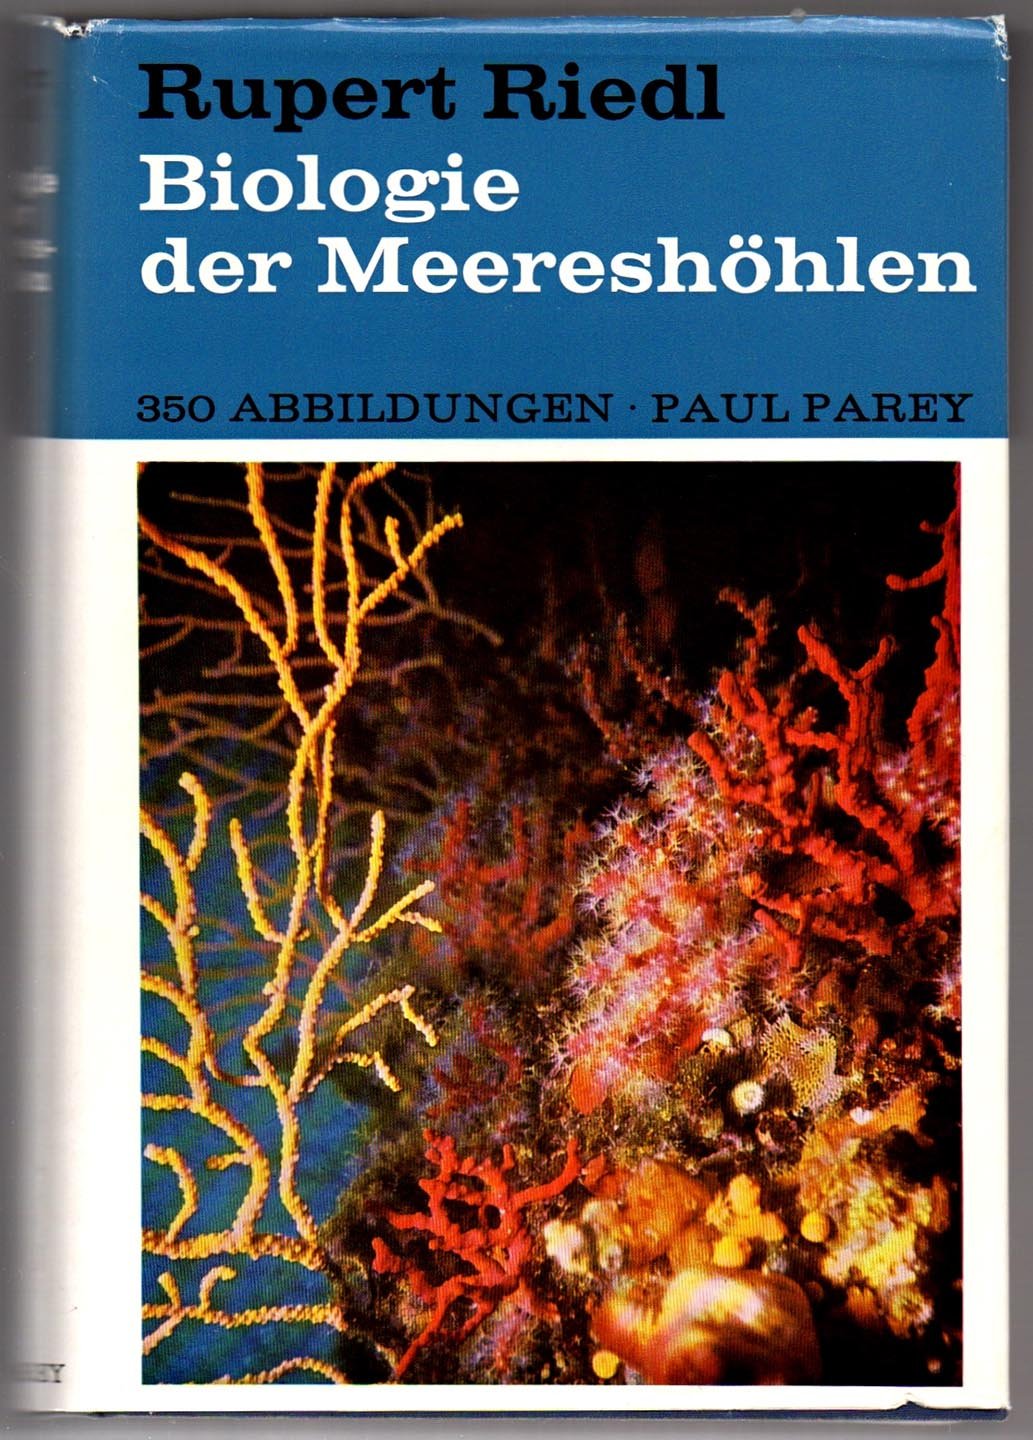 Biologie der Meereshohlen: Topographie, Faunistik und Oekologie eines Unterseeischen Lebensraumes, eine Monographie